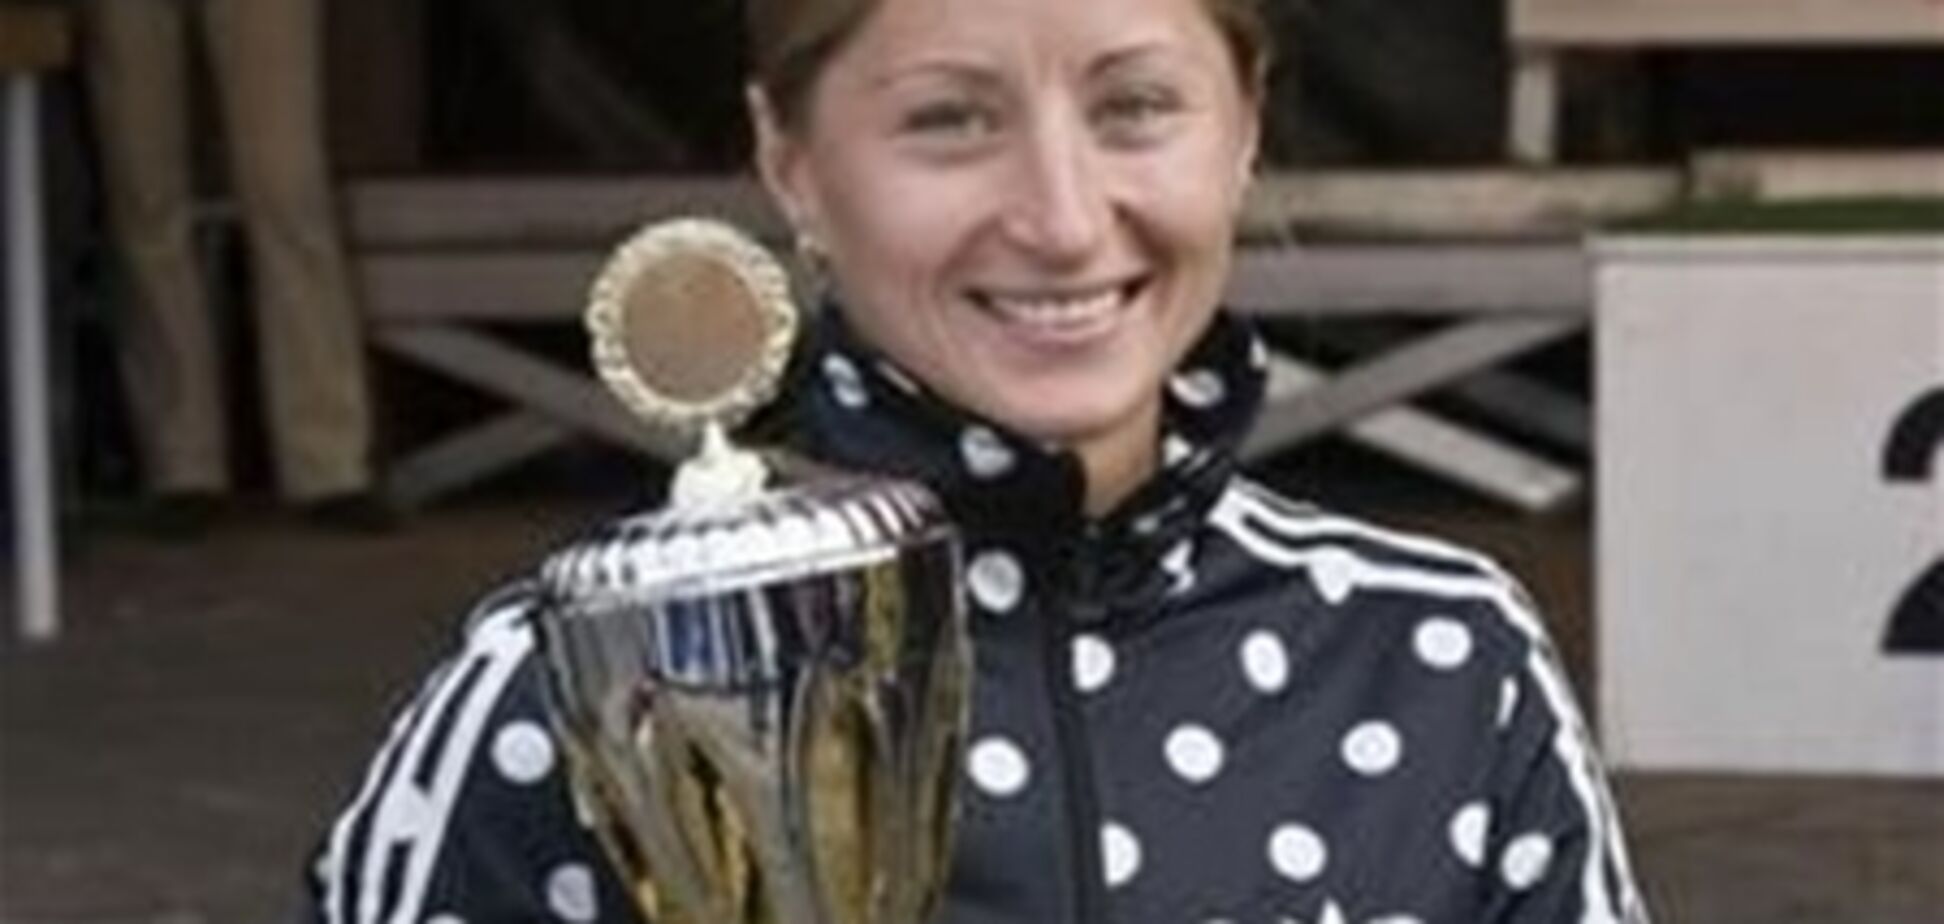 Украинская биатлонистка выиграла летнюю шоу-гонку. Фото